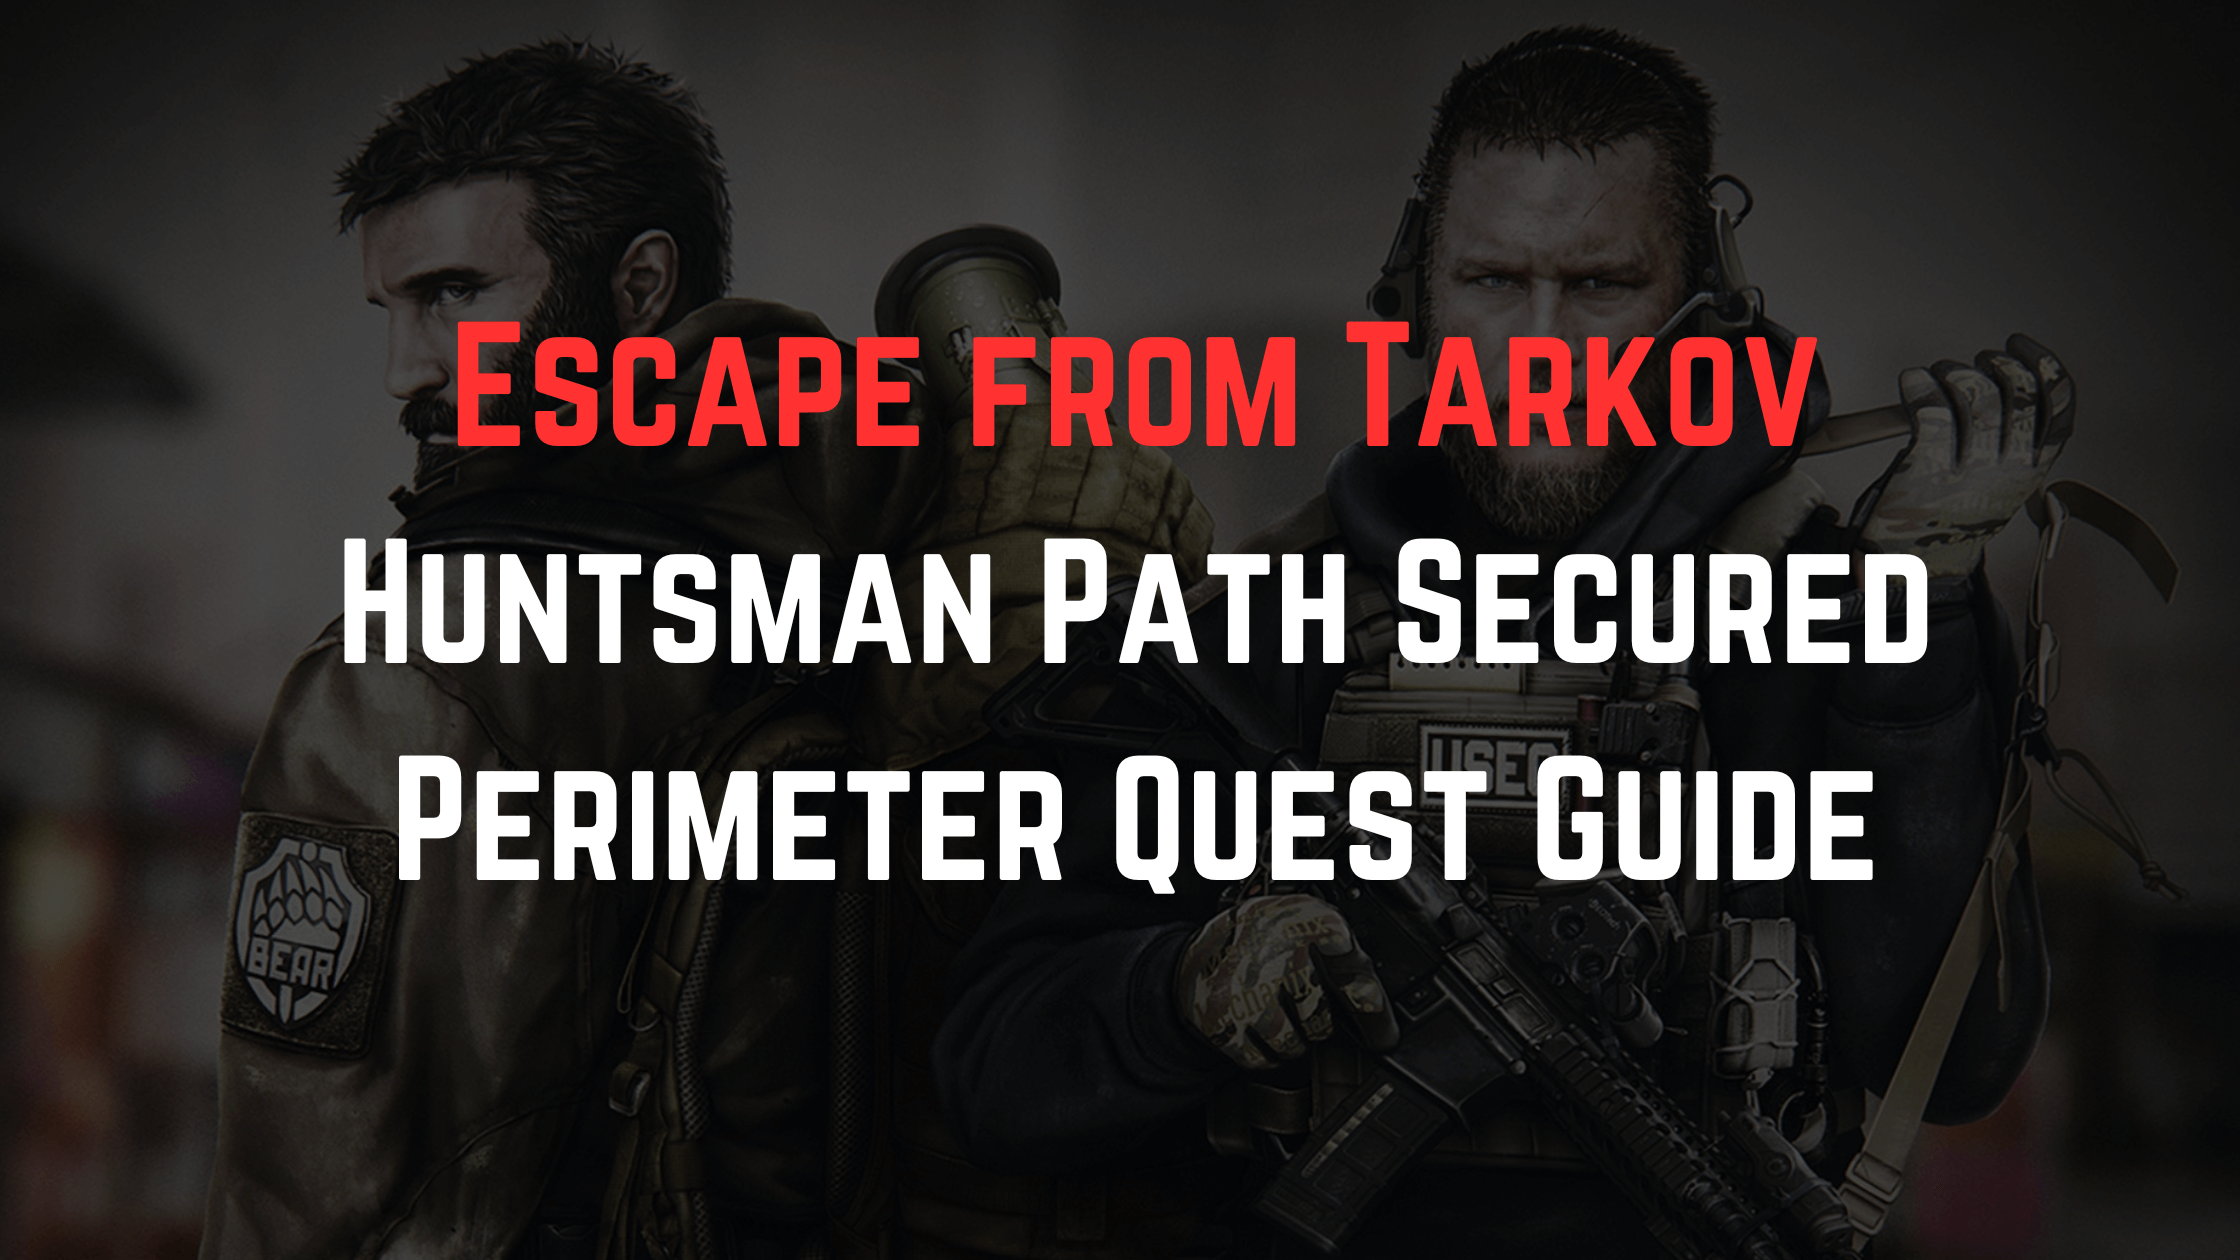 Escape from Tarkov: Huntsman Path Secured Perimeter Quest Guide